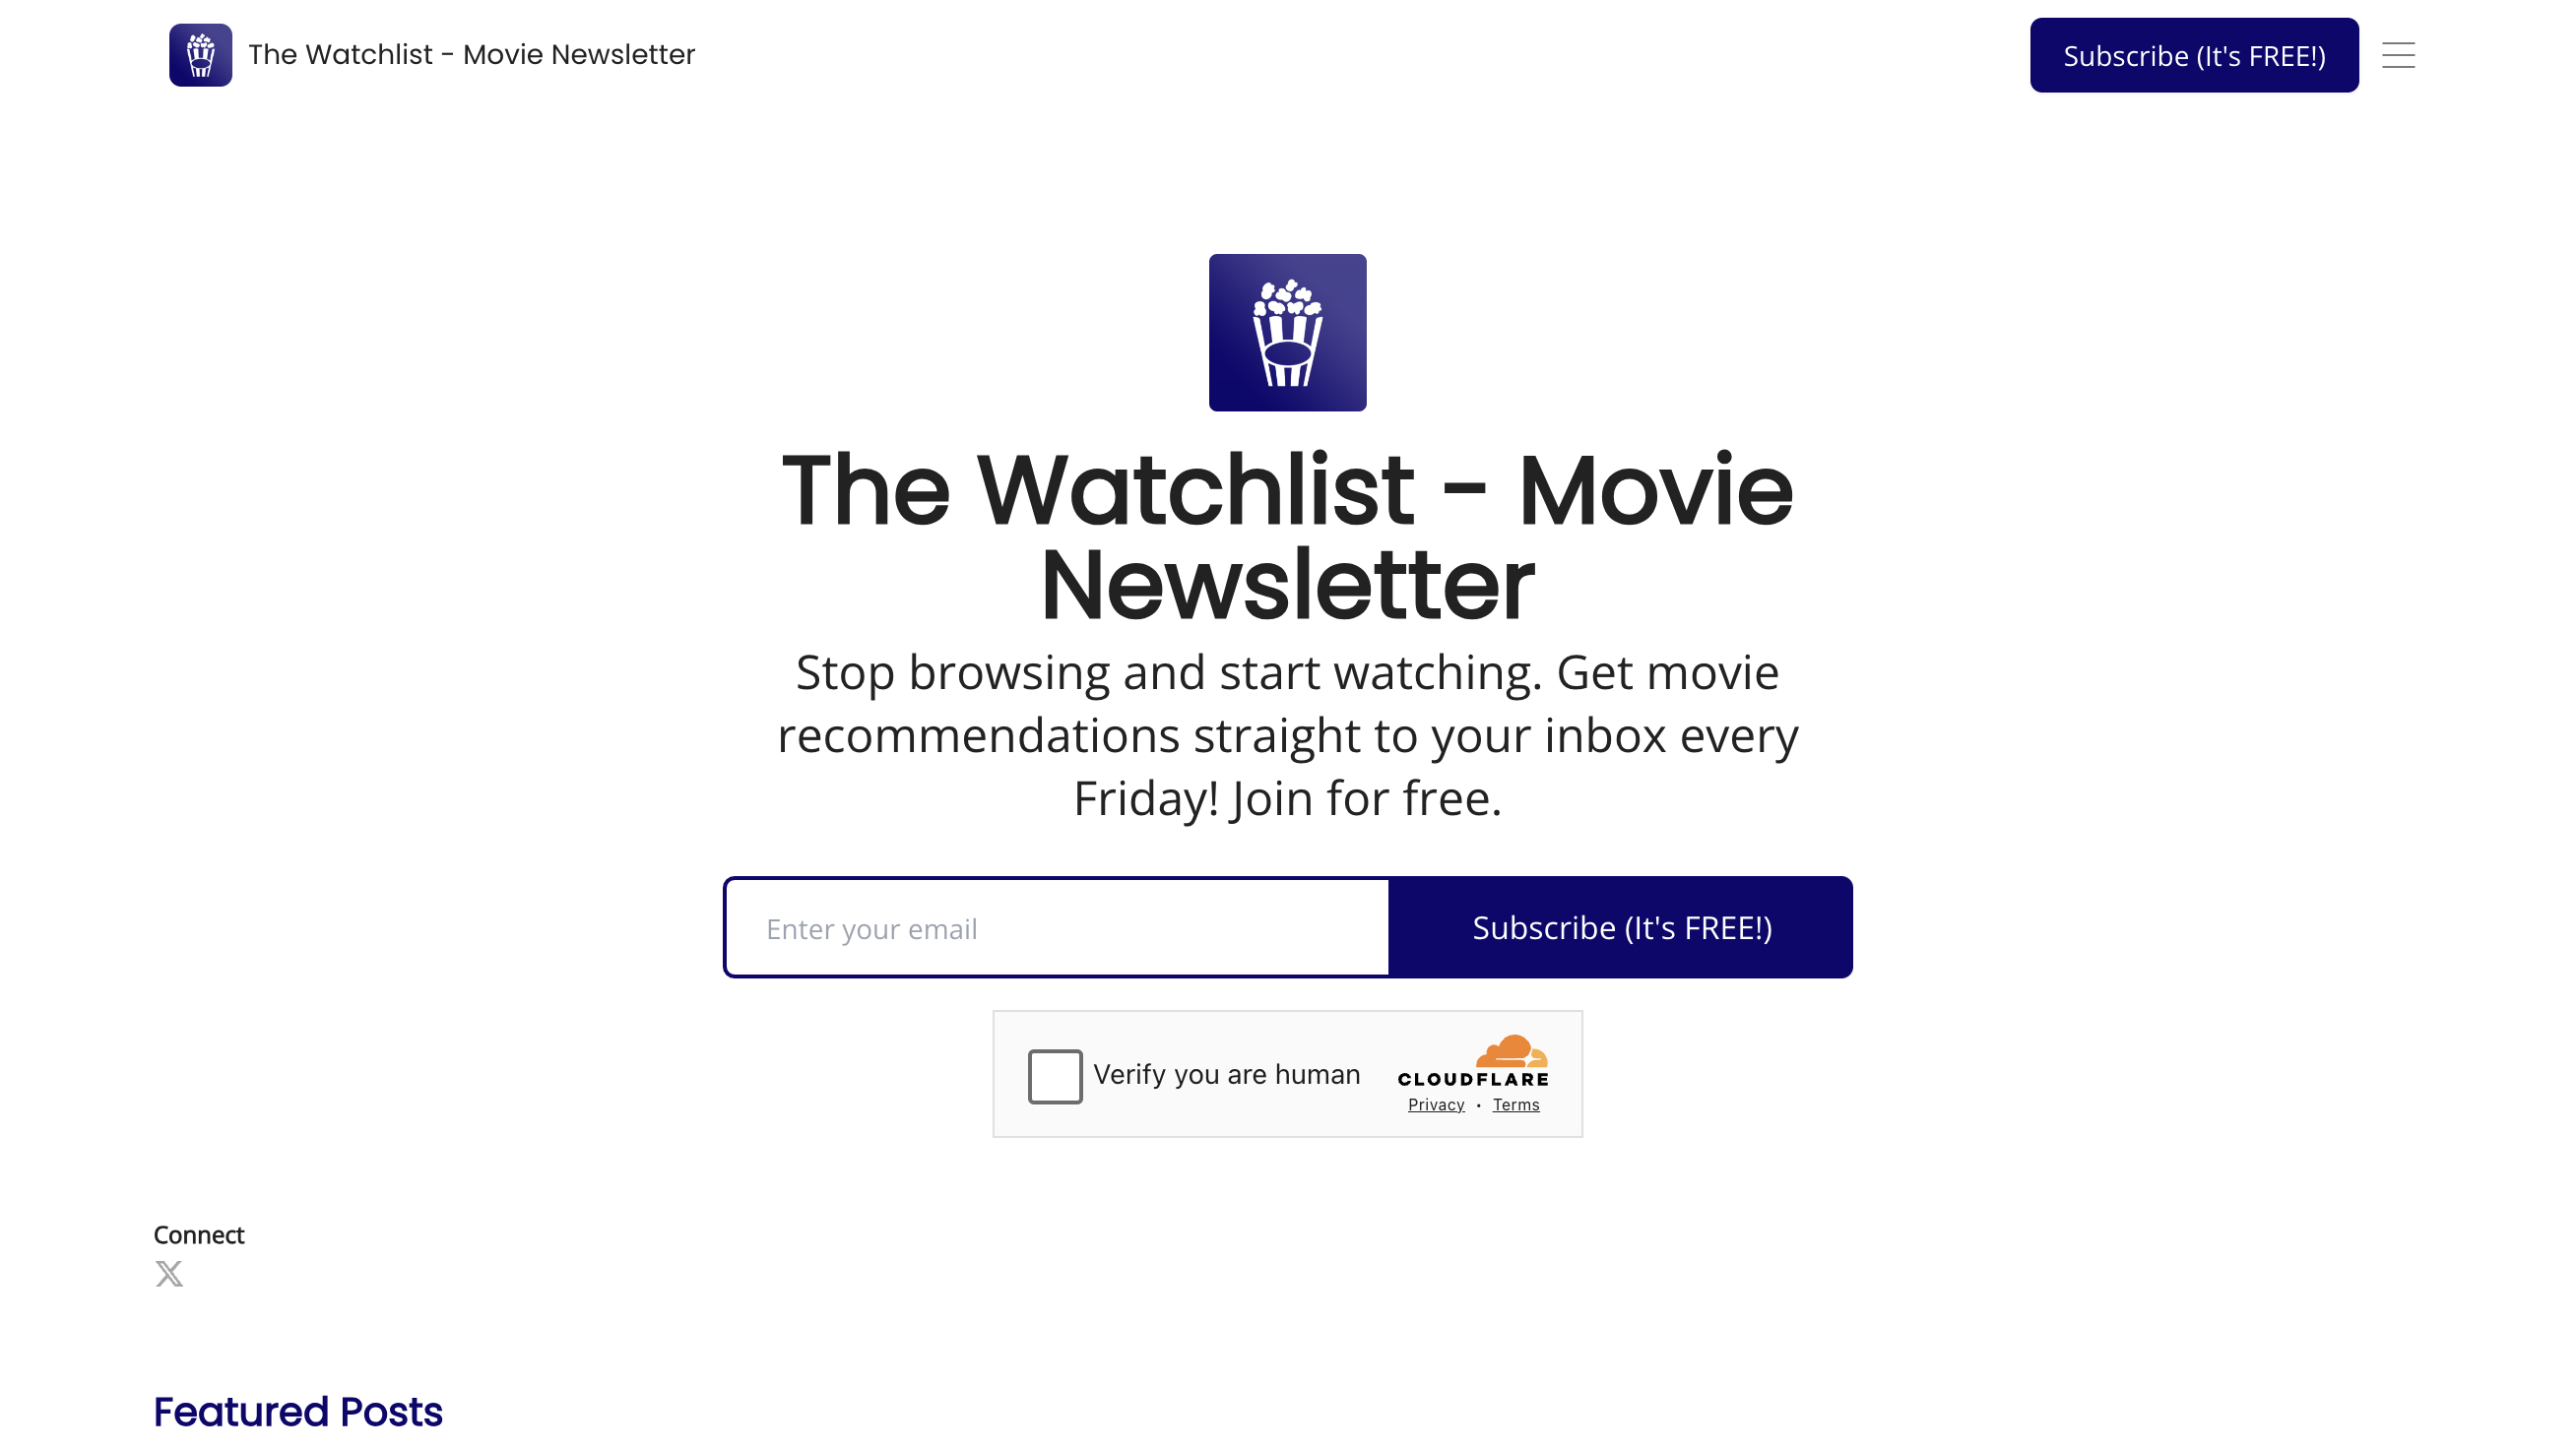 The Watchlist Movie Newsletter homepage